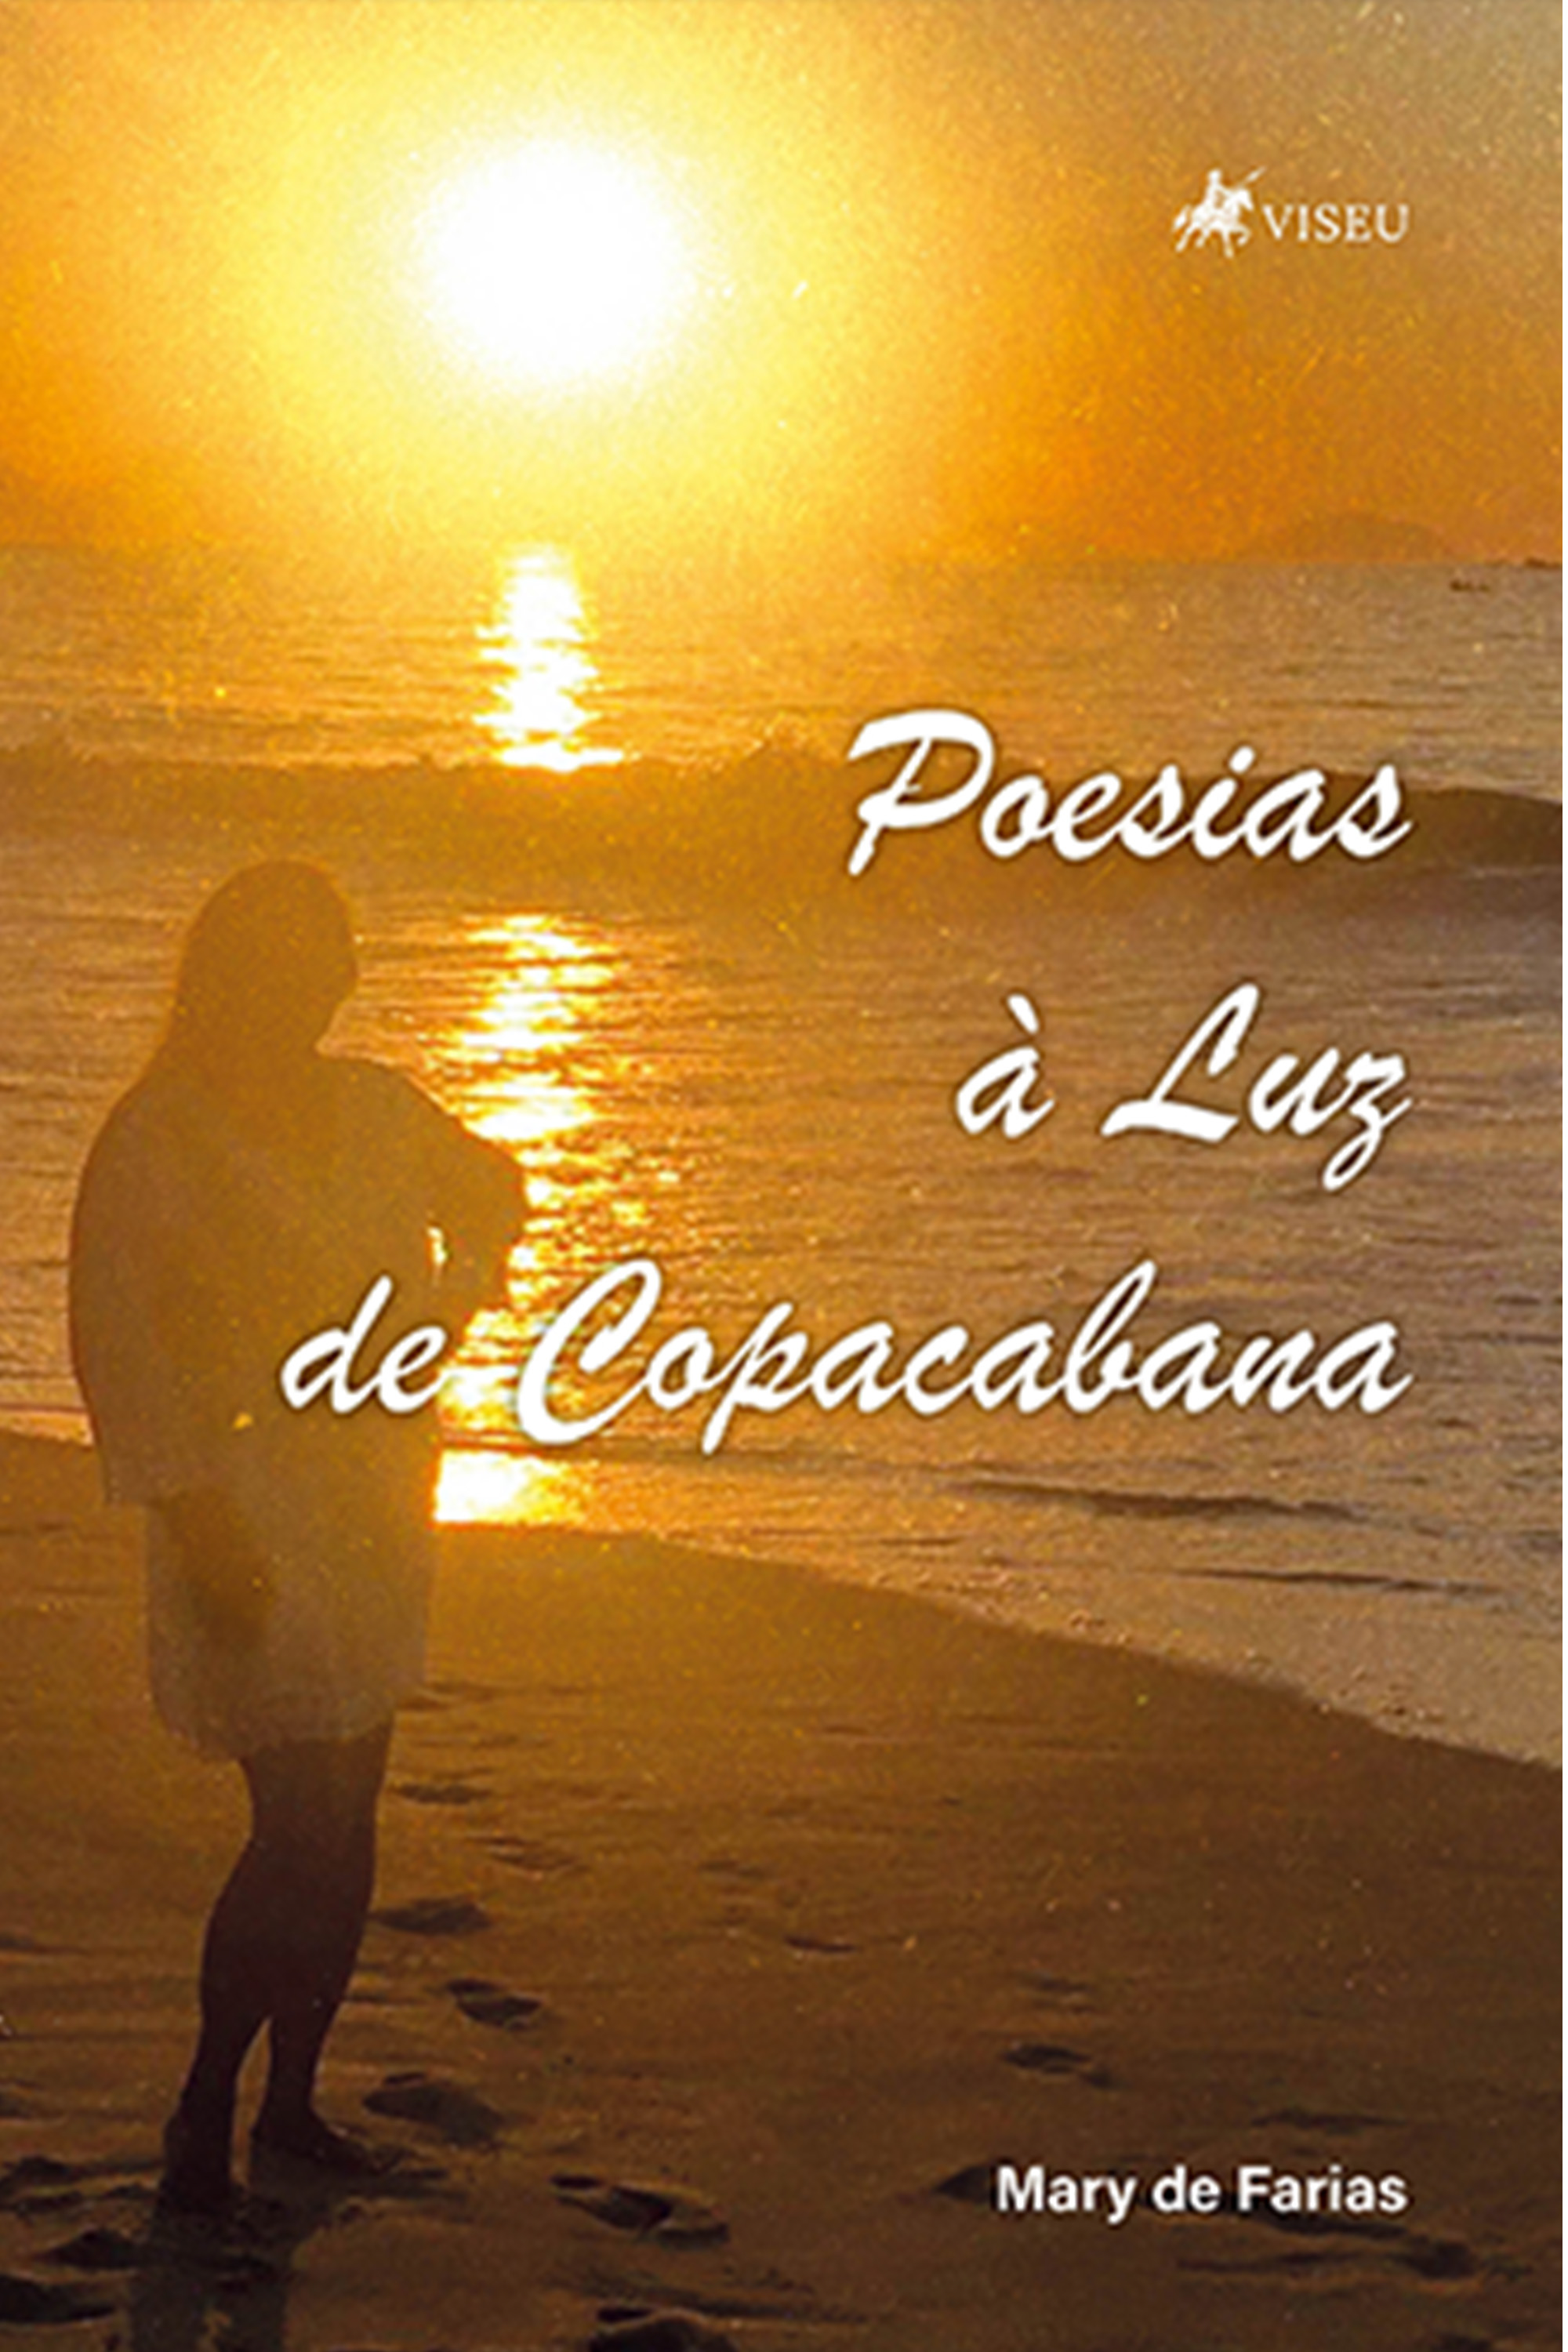 Poesias à Luz de Copacabana